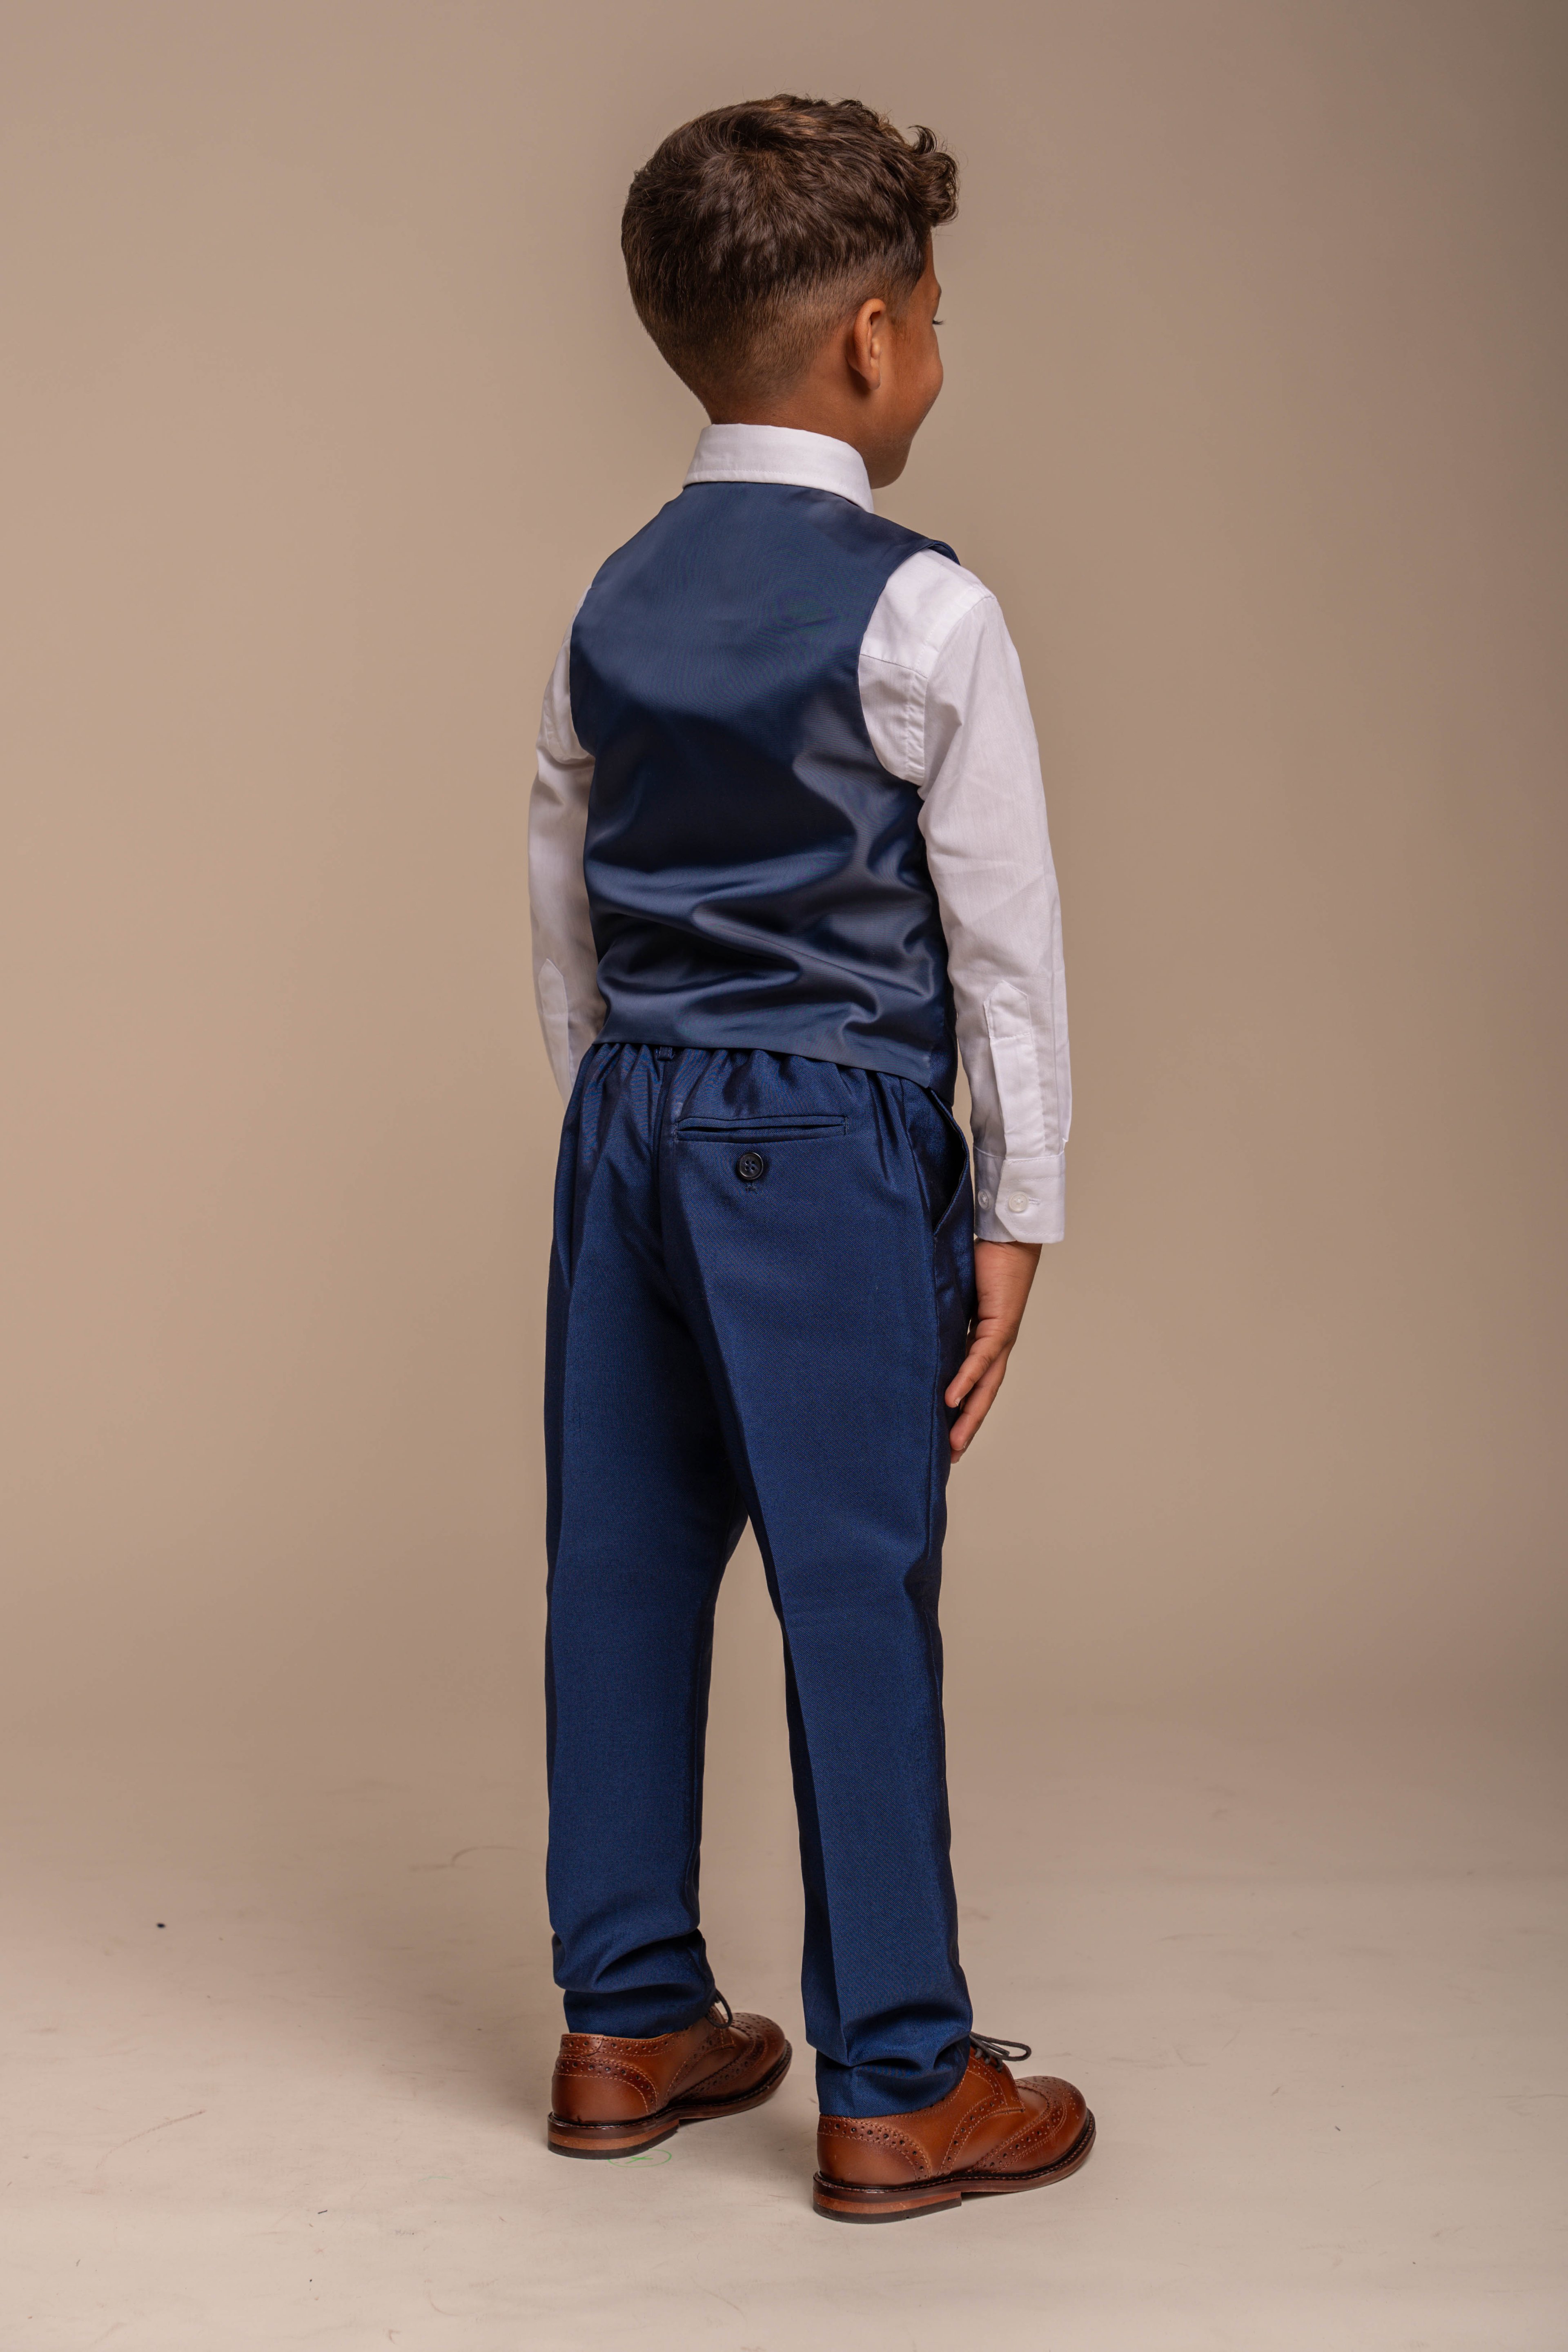 Passender Slim-Fit-Hochzeits-Business-Anzug für Herren und Jungen